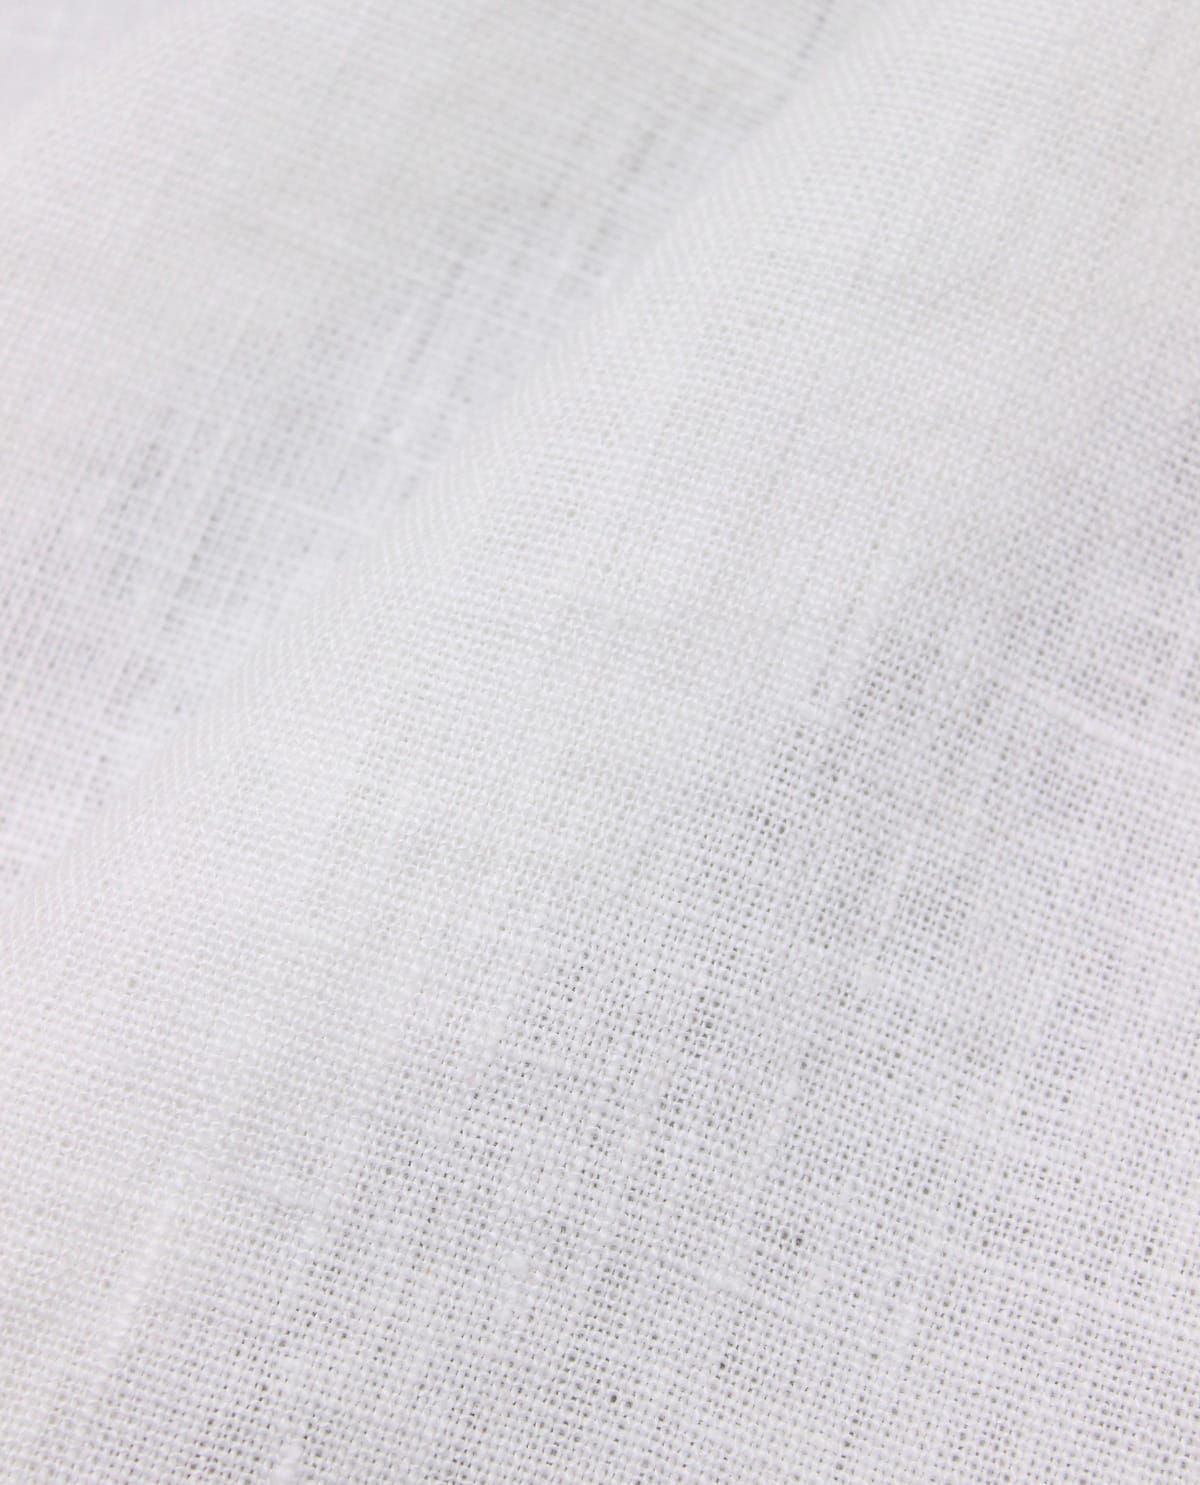 Белый лен. Лён белый костюмный. Ткань хлопколен в интернет магазин.